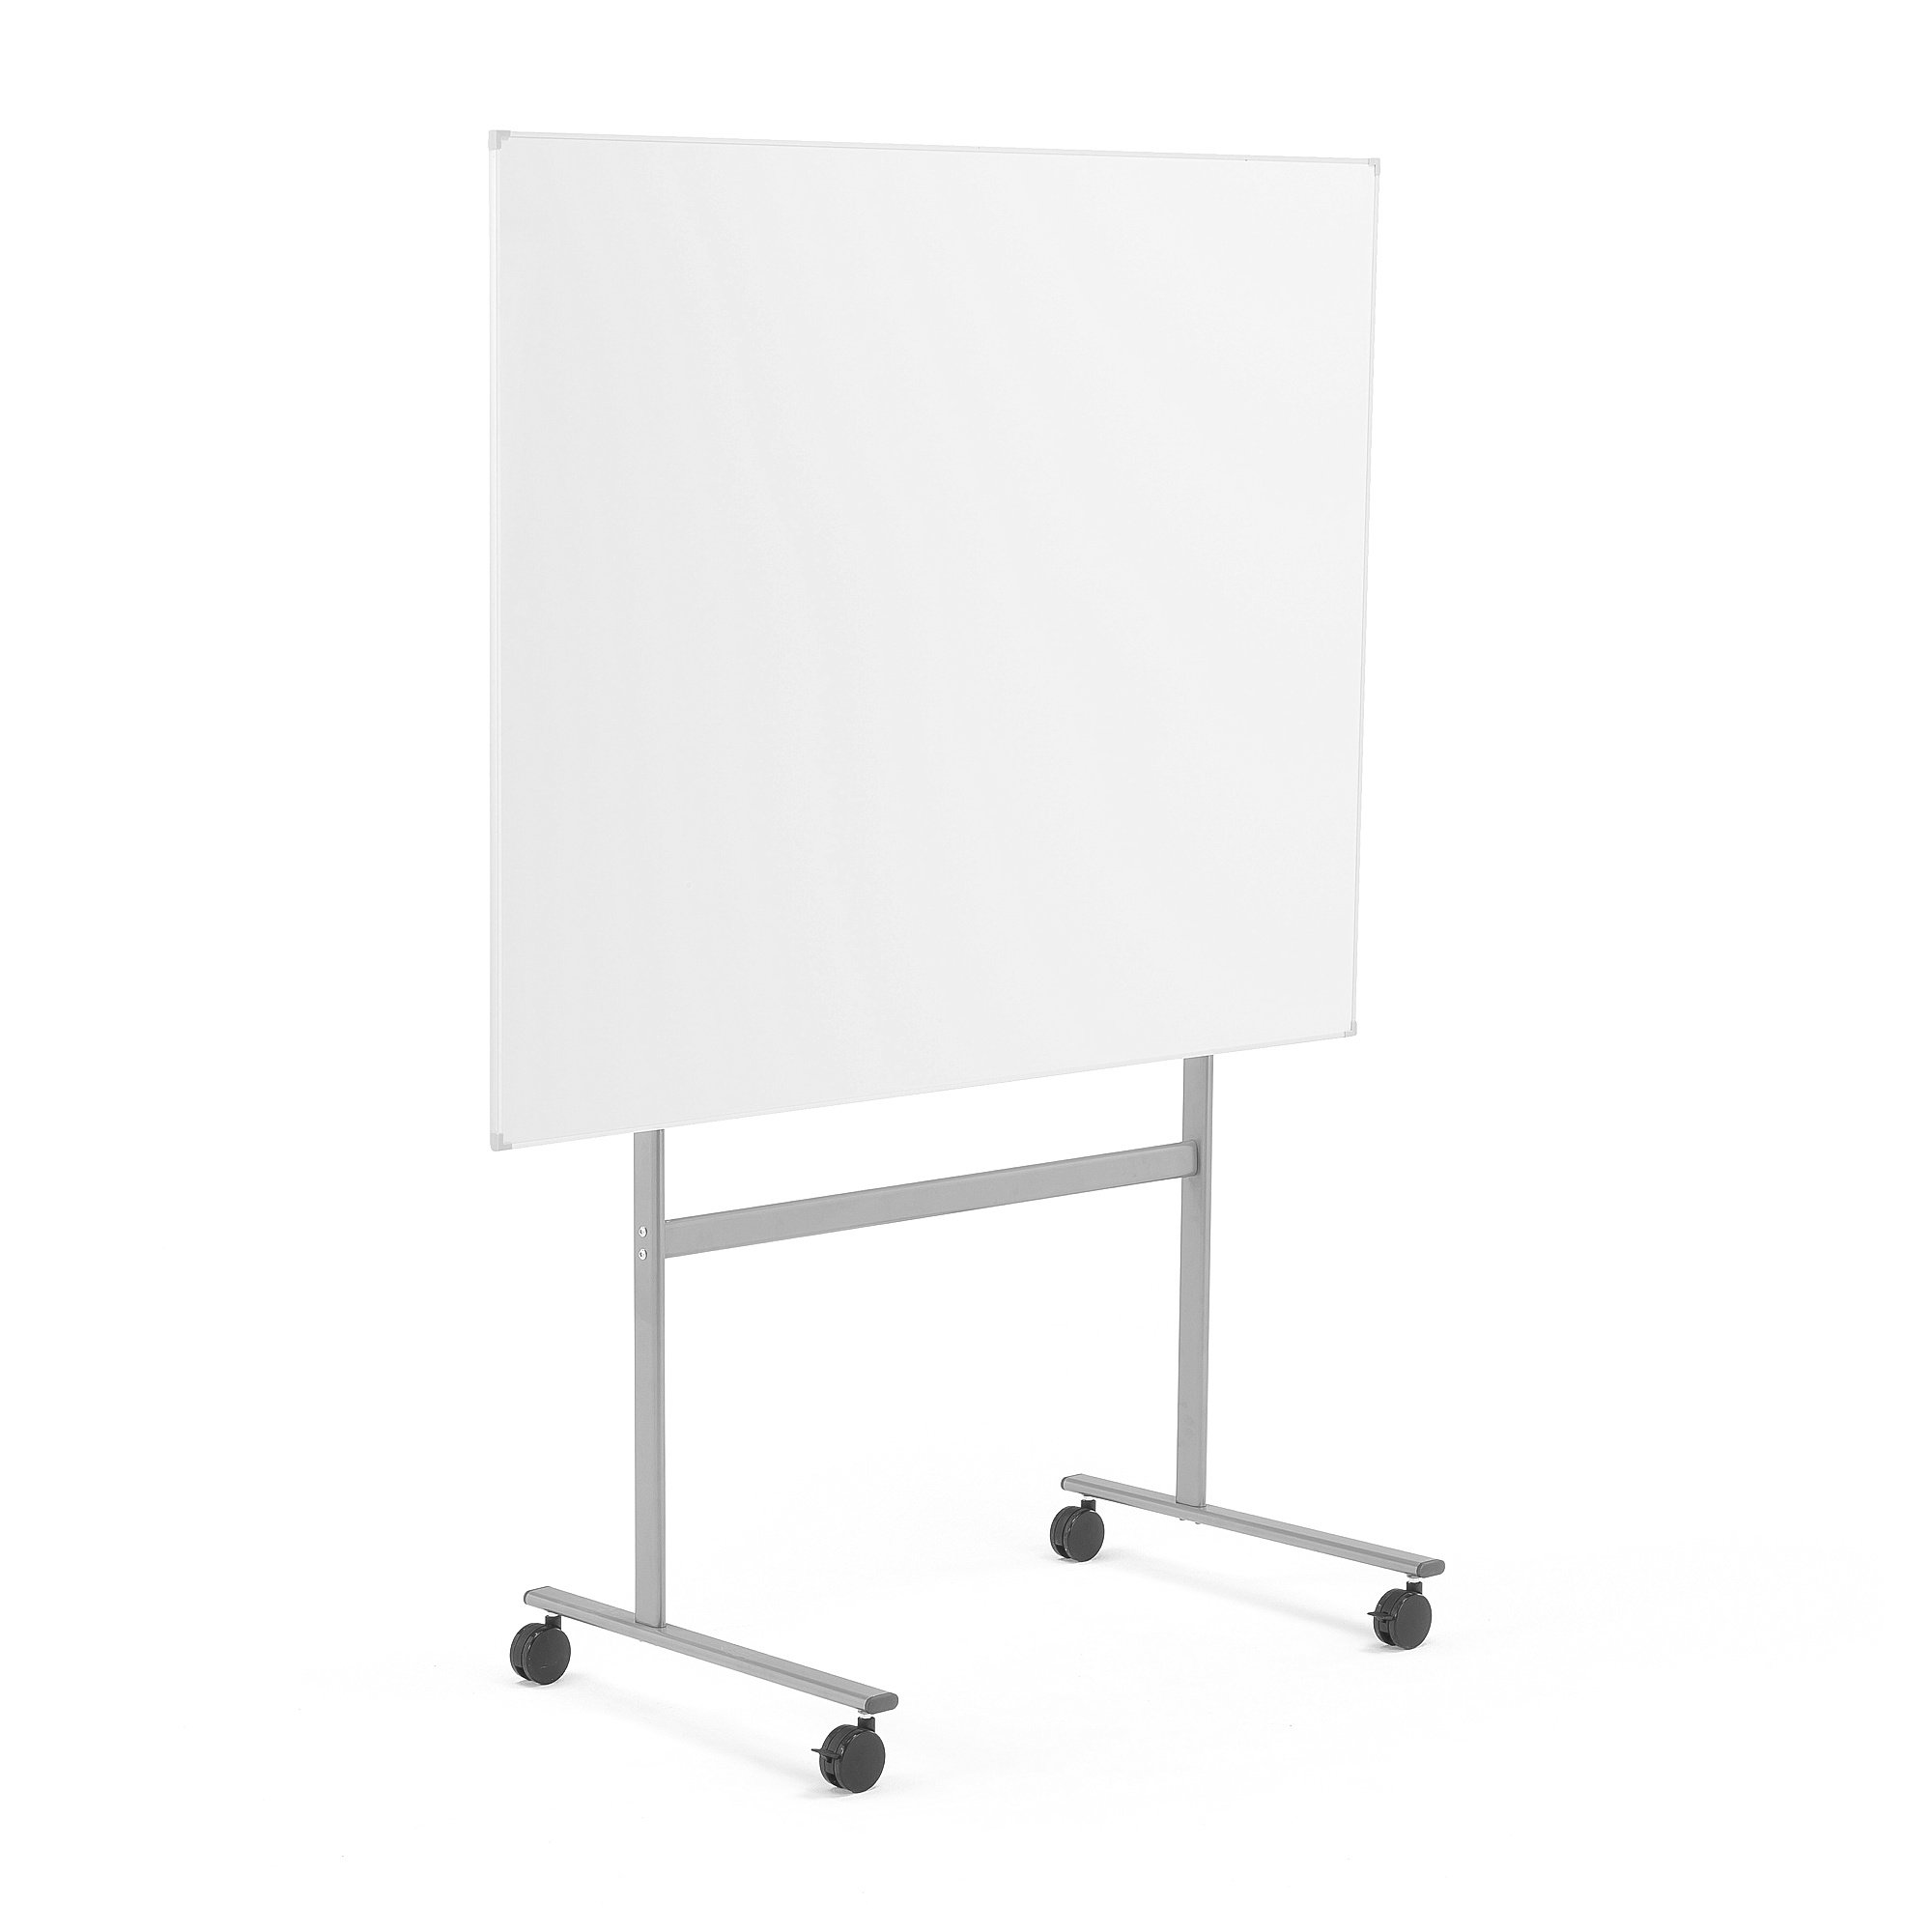 E-shop Biela magnetická tabuľa s kolieskami DORIS, 1500x1200 mm